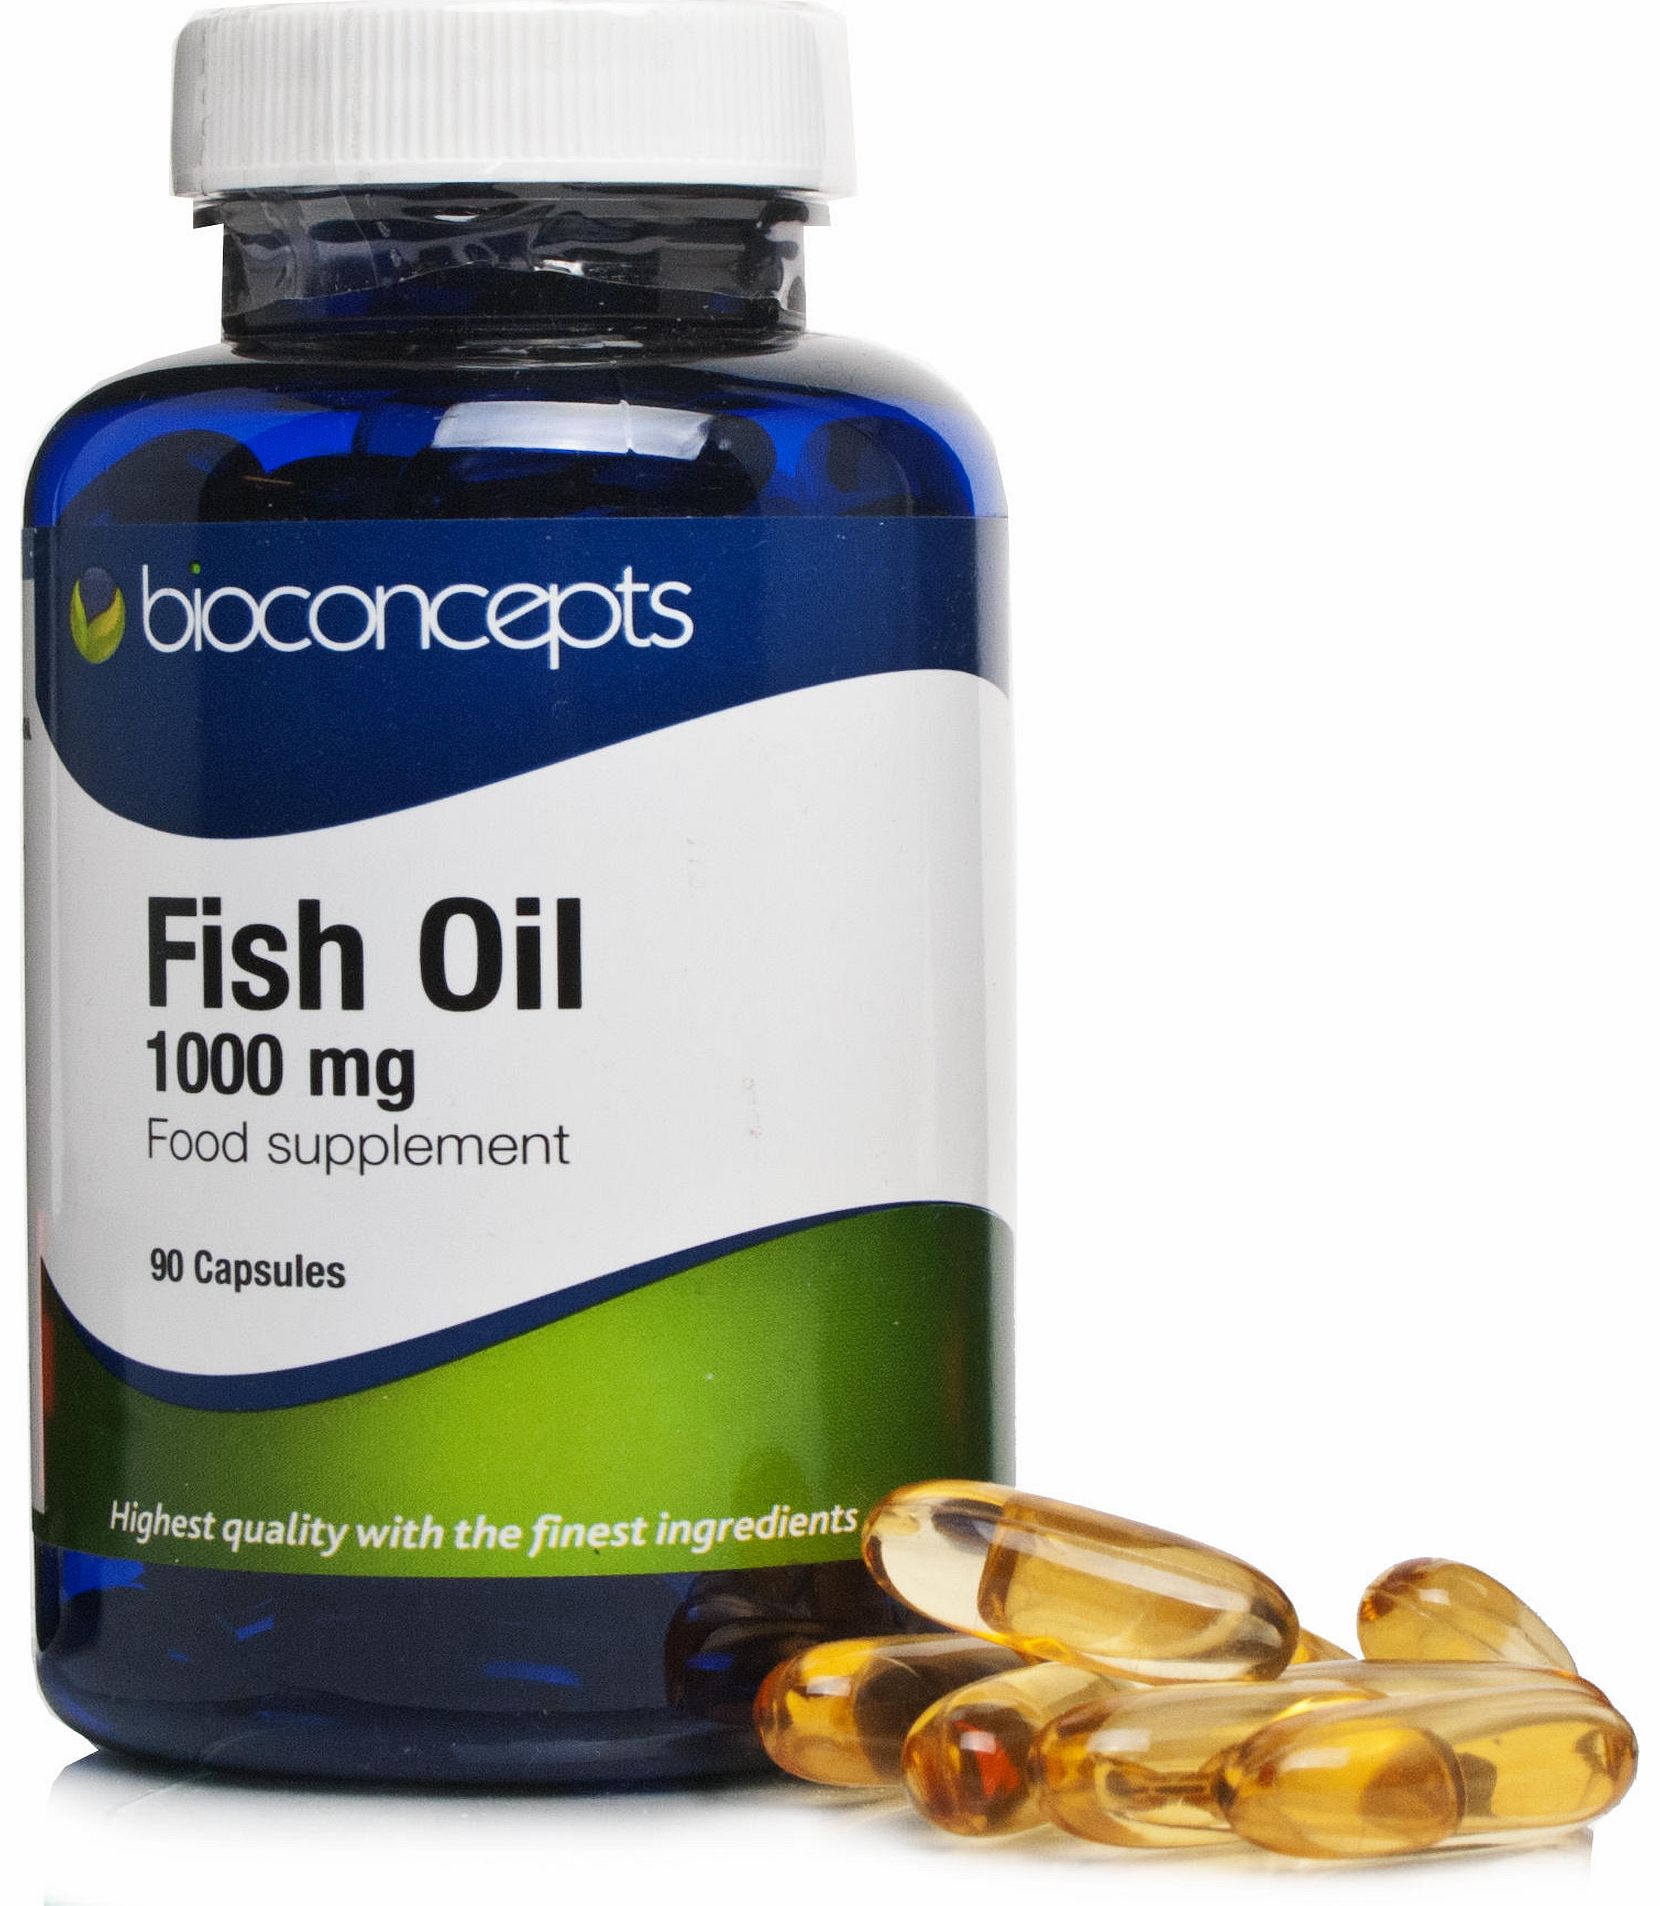 Bioconcepts Fish Oil 1000mg